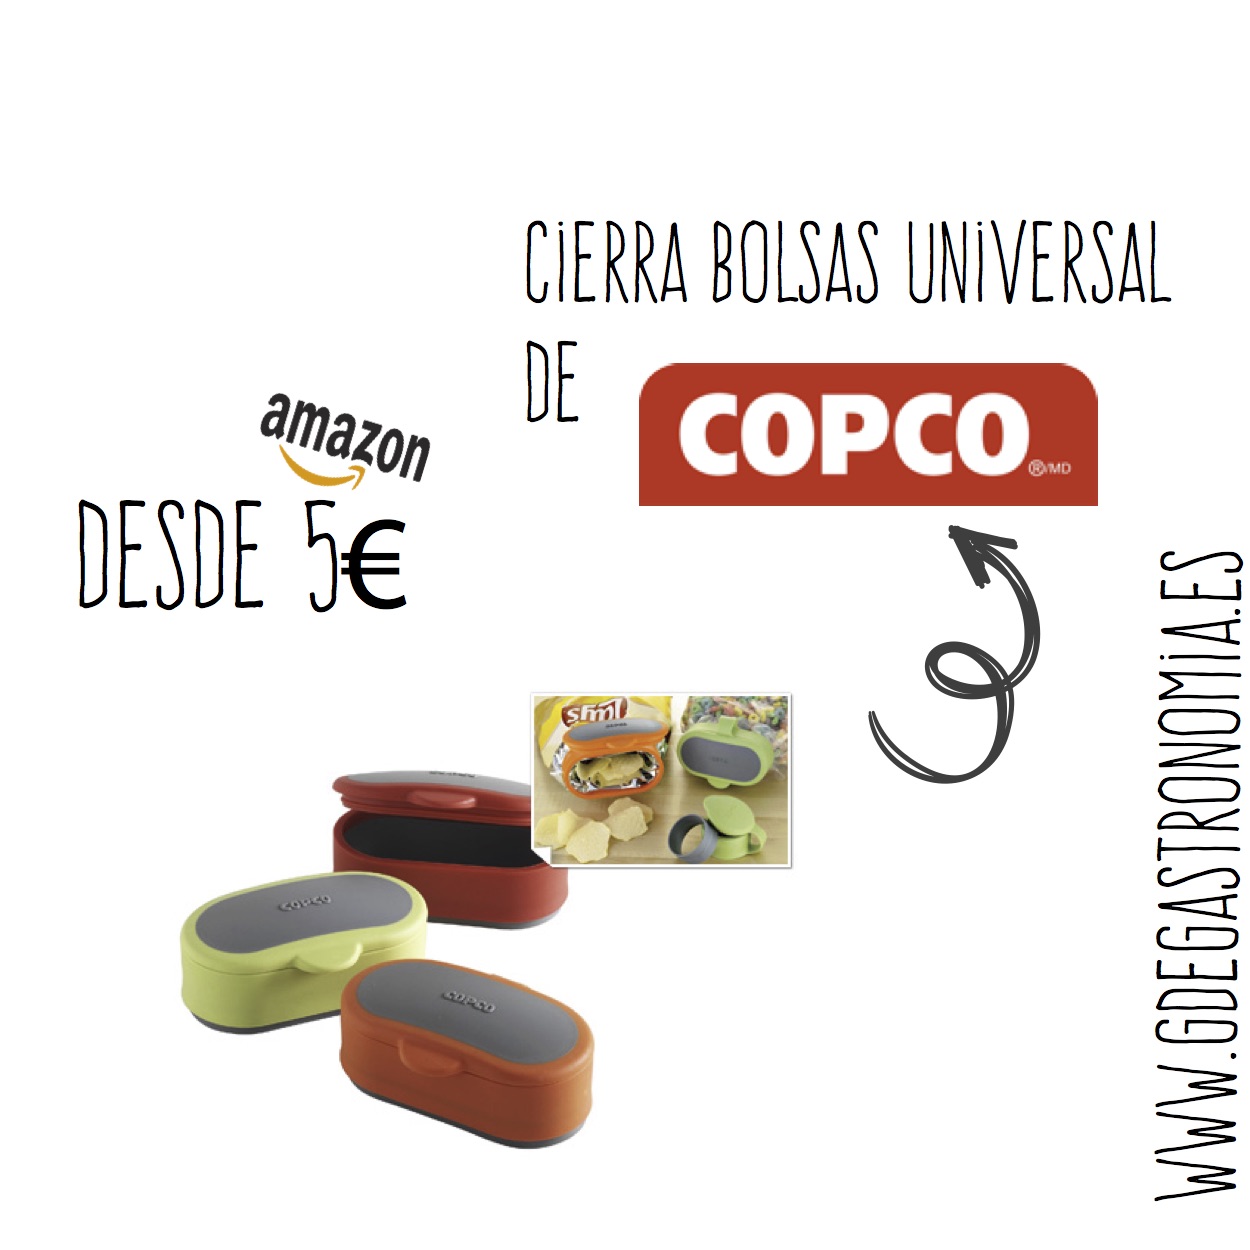 Cierra bolsas universal de Copco